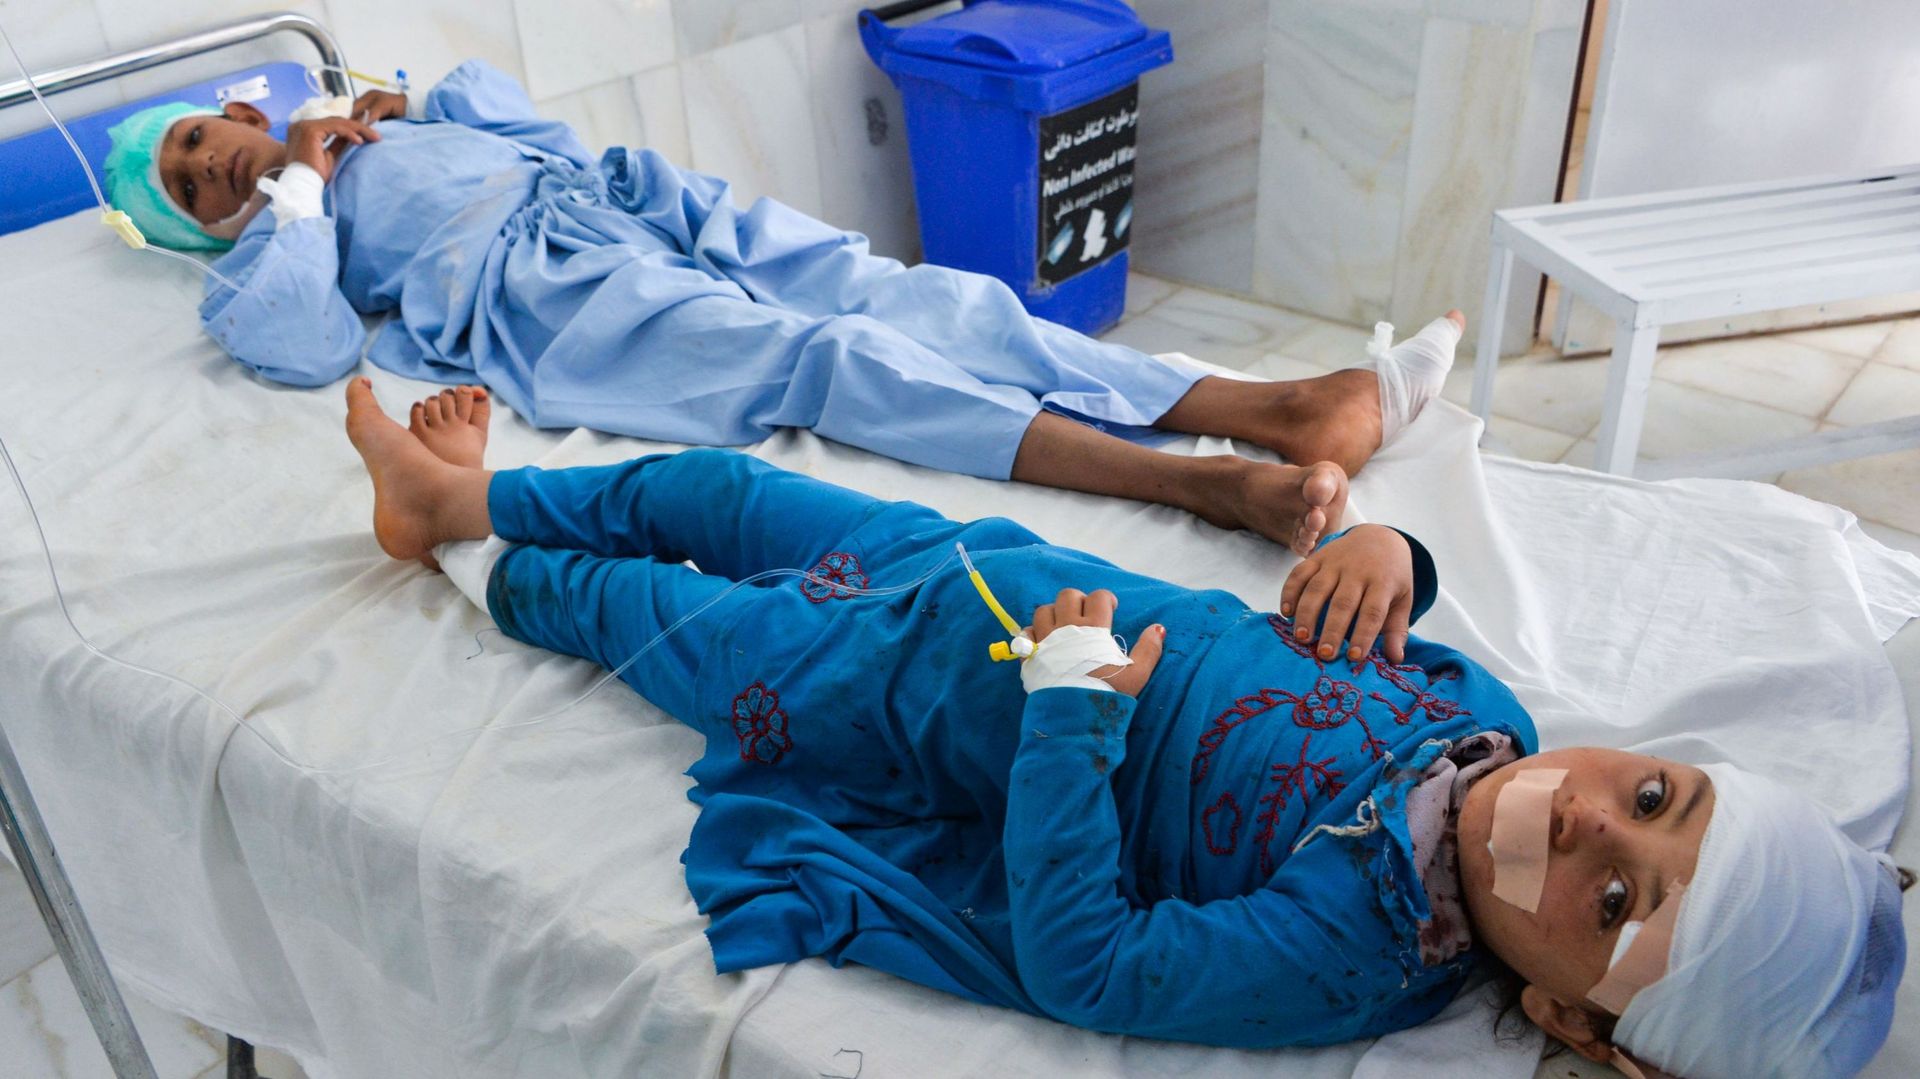 Des enfants reçoivent des soins médicaux à l'hôpital après avoir été blessés dans l'explosion d'une bombe à Alishang, dans la province de Laghman, le 16 octobre 2019. Au moins trois personnes ont été tuées et une vingtaine d'autres blessées lorsqu'un cami